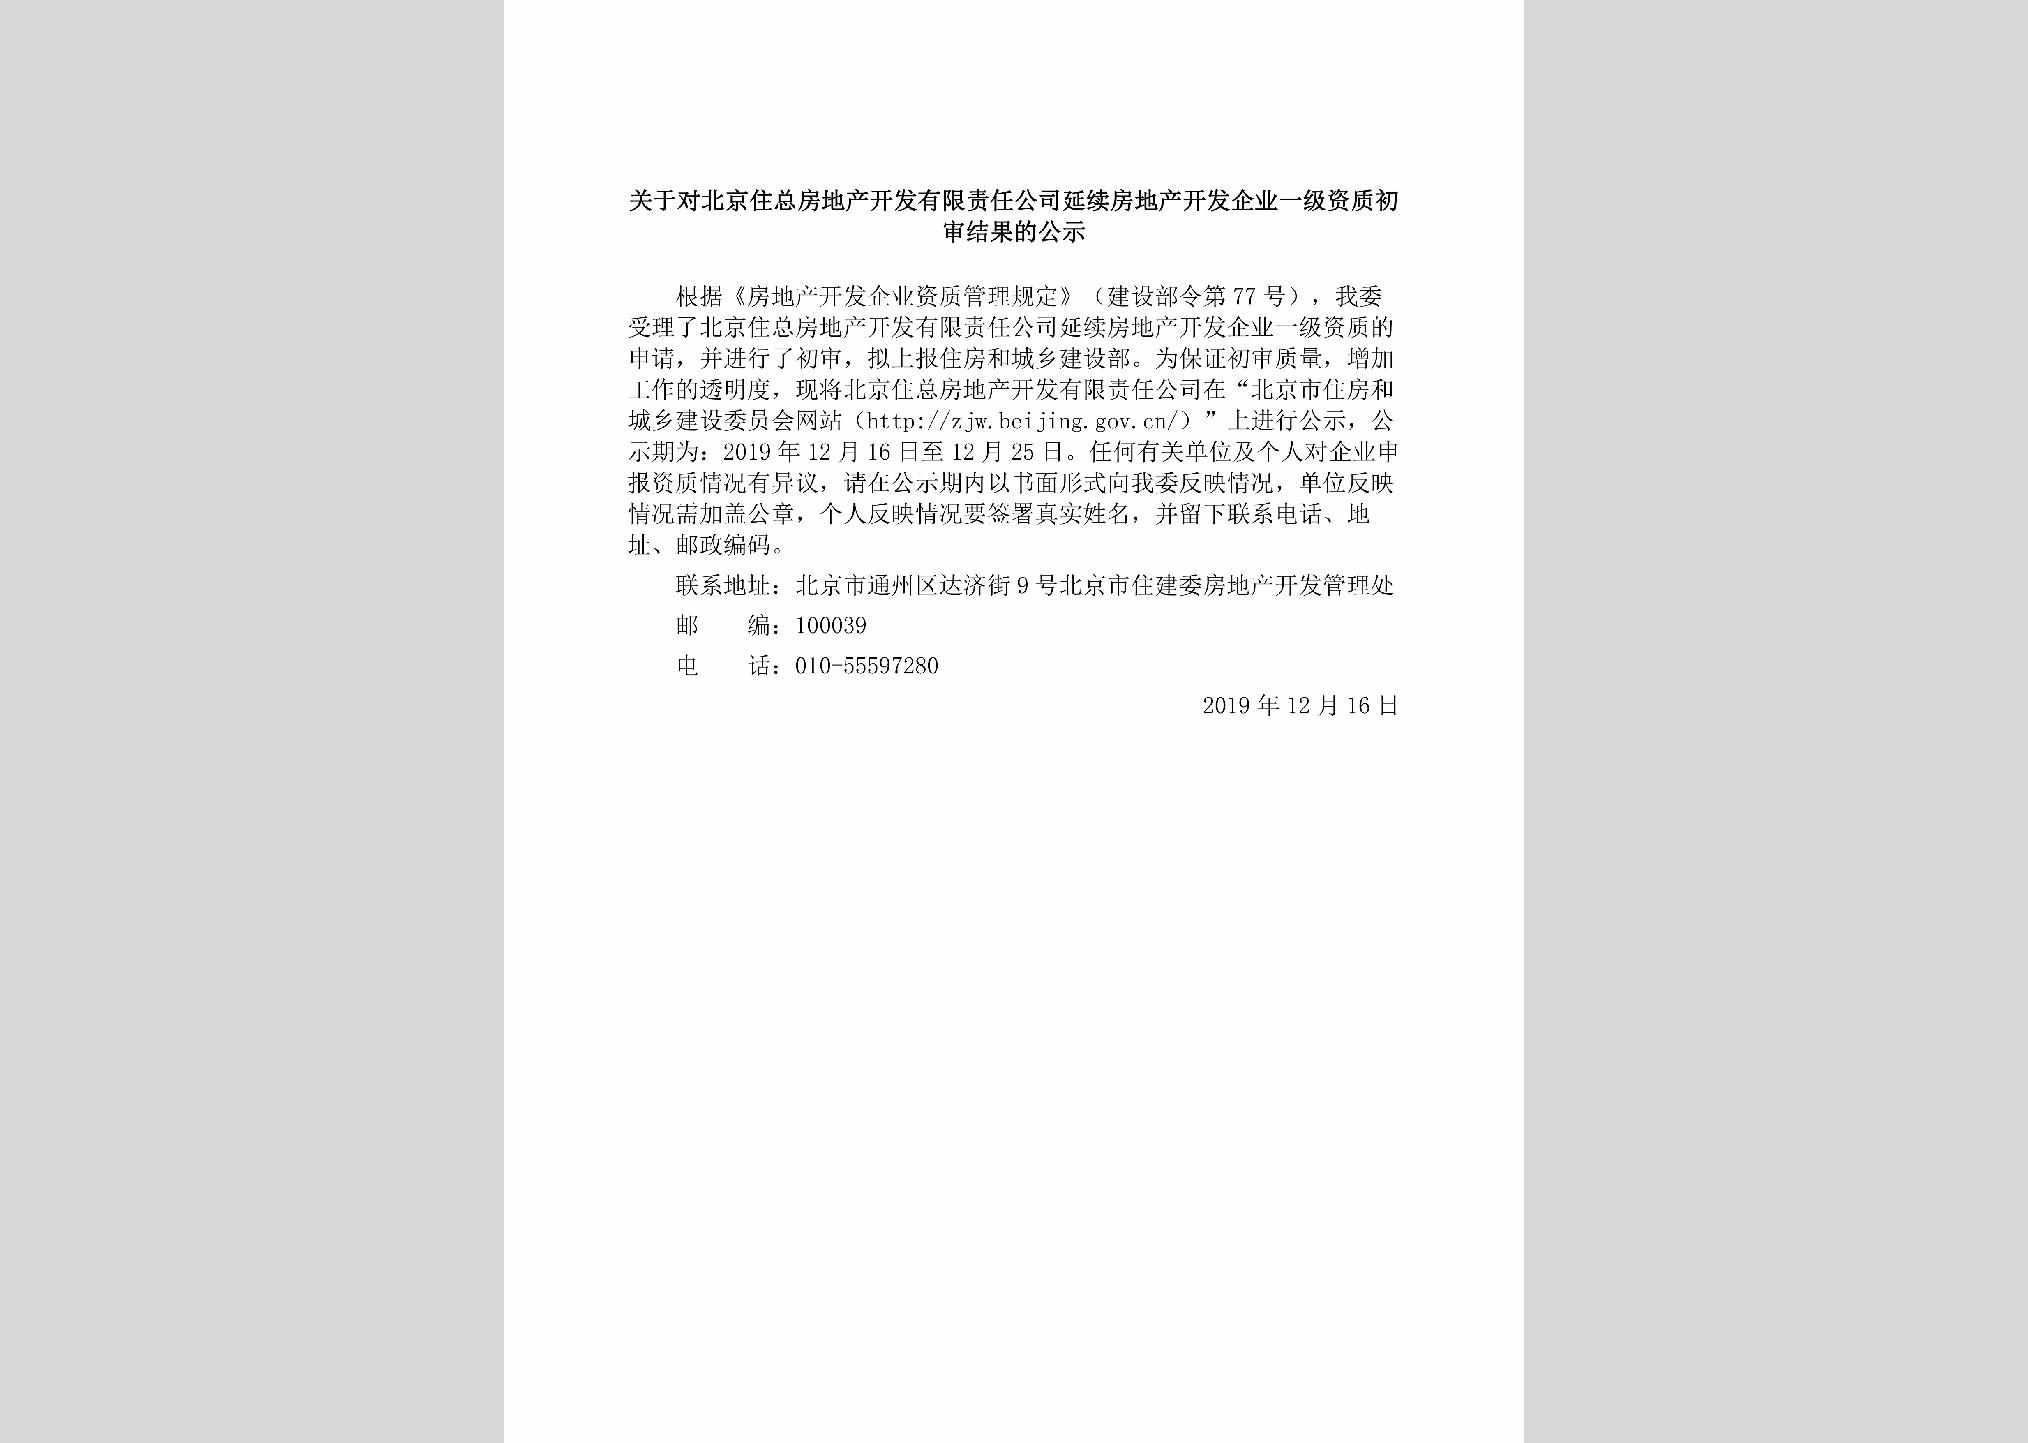 BJ-BJZZFDCK-2019：关于对北京住总房地产开发有限责任公司延续房地产开发企业一级资质初审结果的公示